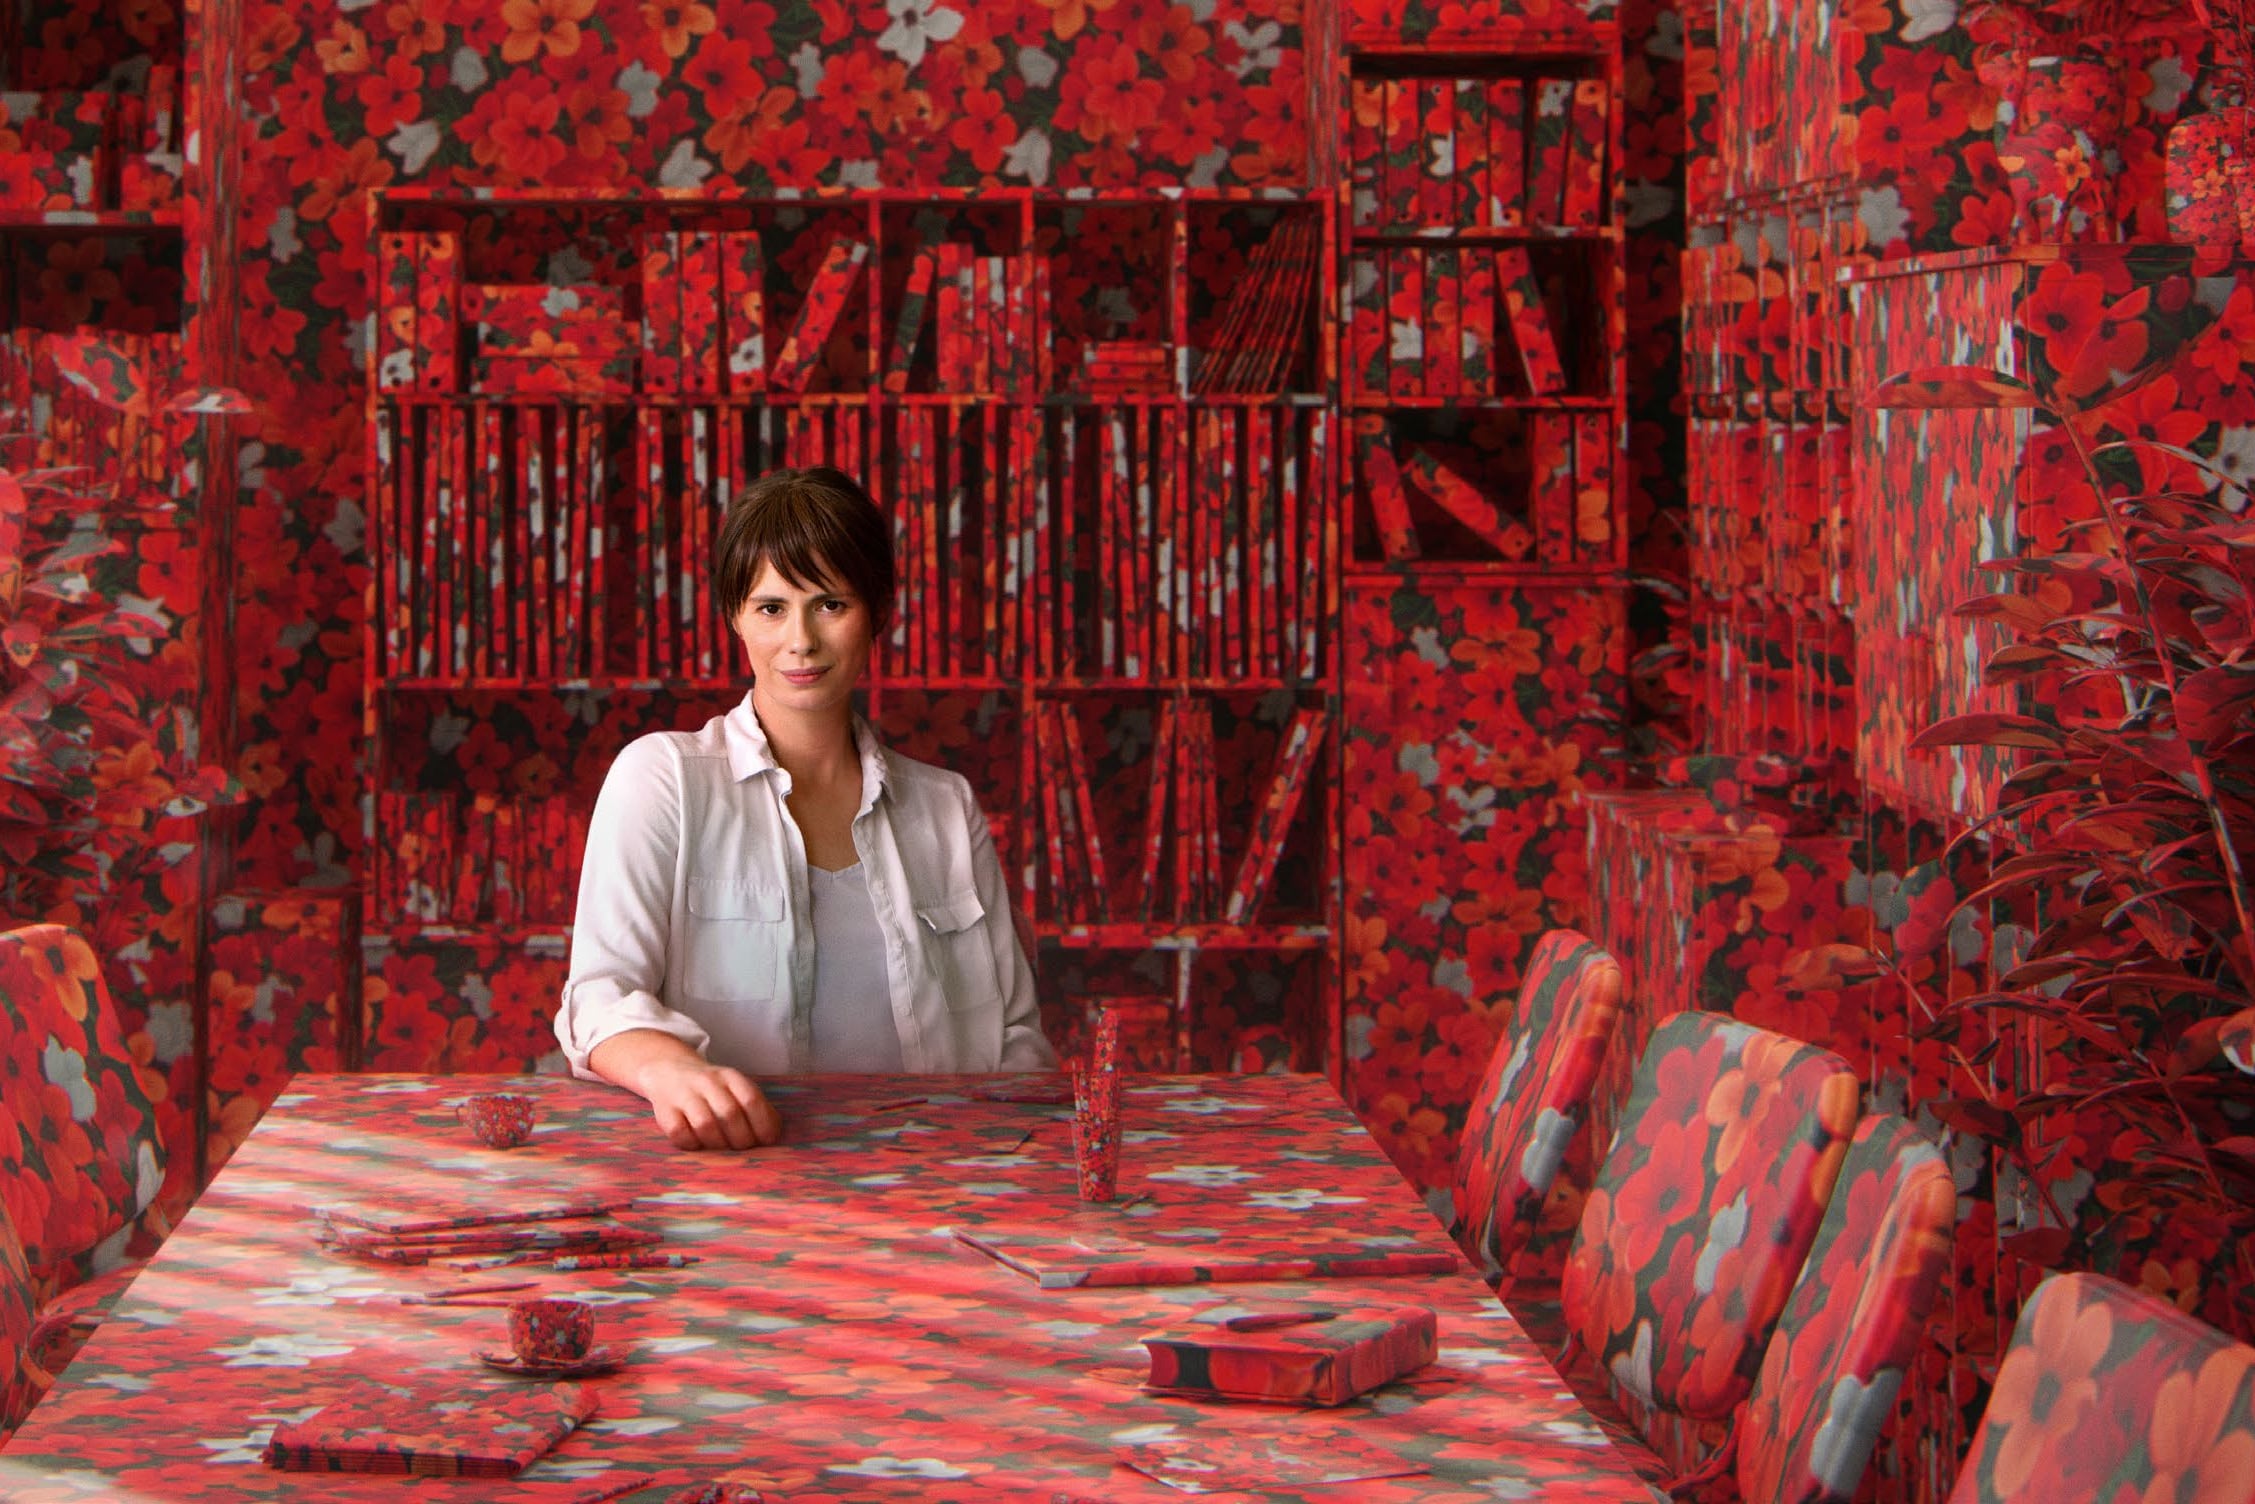 Eine Frau sitzt an einem Tisch, der mit einer Tischdecke mit roten Rosen bedeckt ist. Dasselbe Muster findet sich auf den Stühlen und an den Wänden des Raumes wieder.